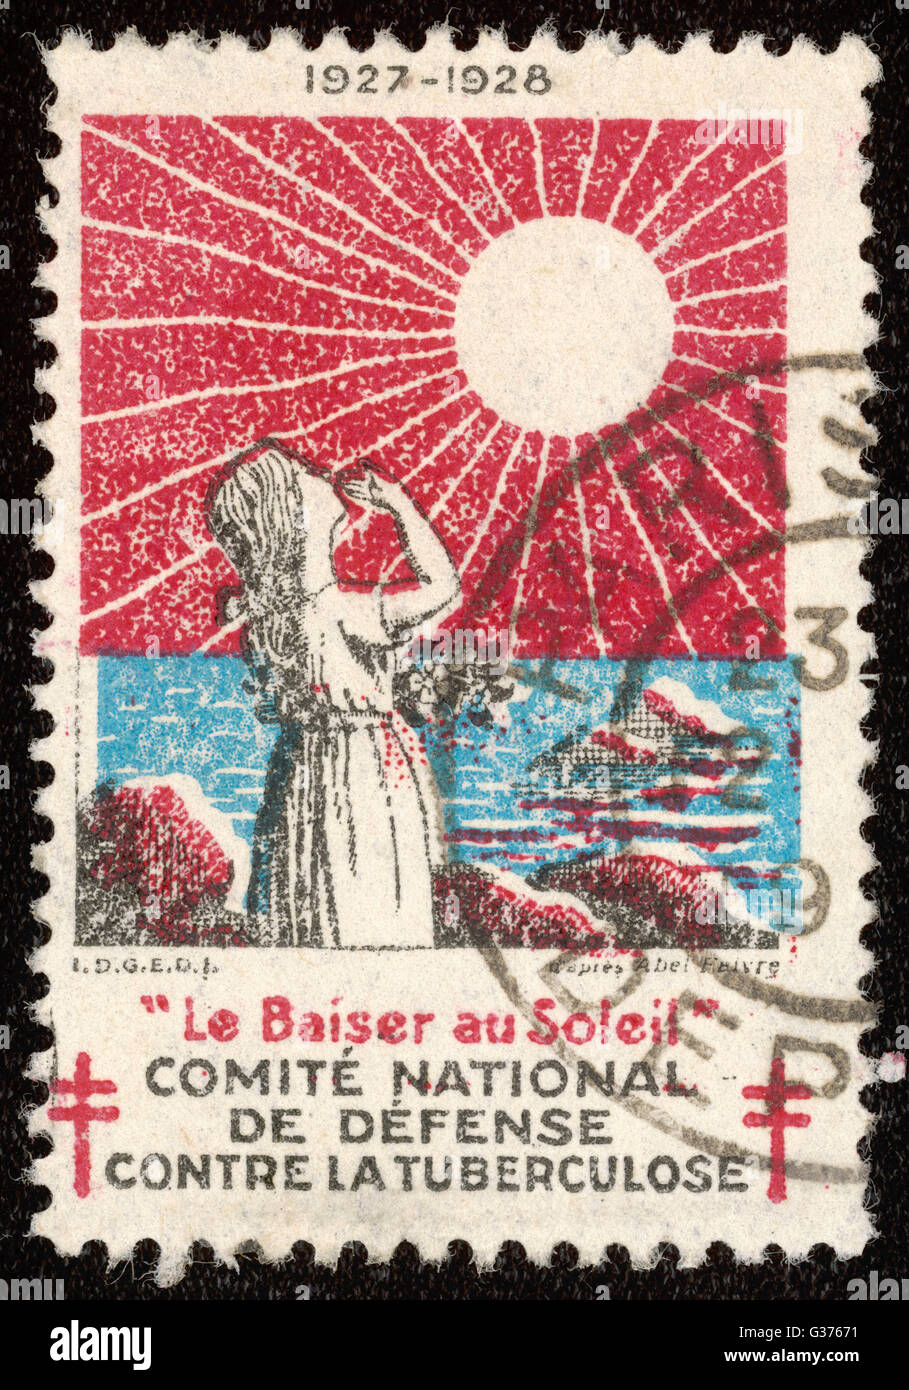 Timbre-poste français la promotion du soleil pour lutter contre la tuberculose. Date : 1927-1928 Banque D'Images